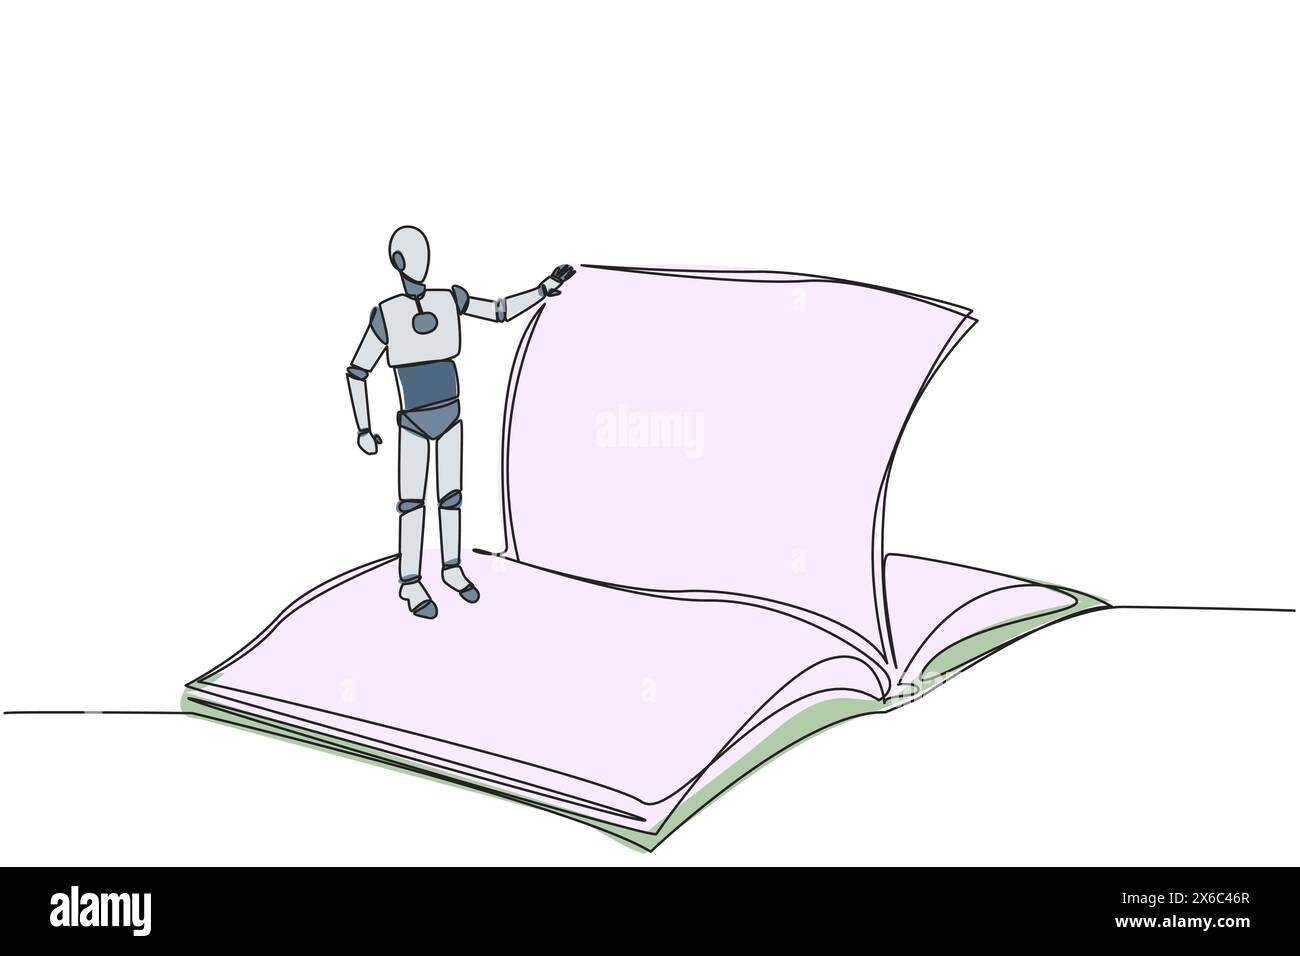 Robot intelligent de dessin d'une seule ligne se tenant au-dessus de la page ouverte du grand livre tournant. Lisez lentement pour comprendre le contenu de chaque page. La lecture augmente insig Illustration de Vecteur